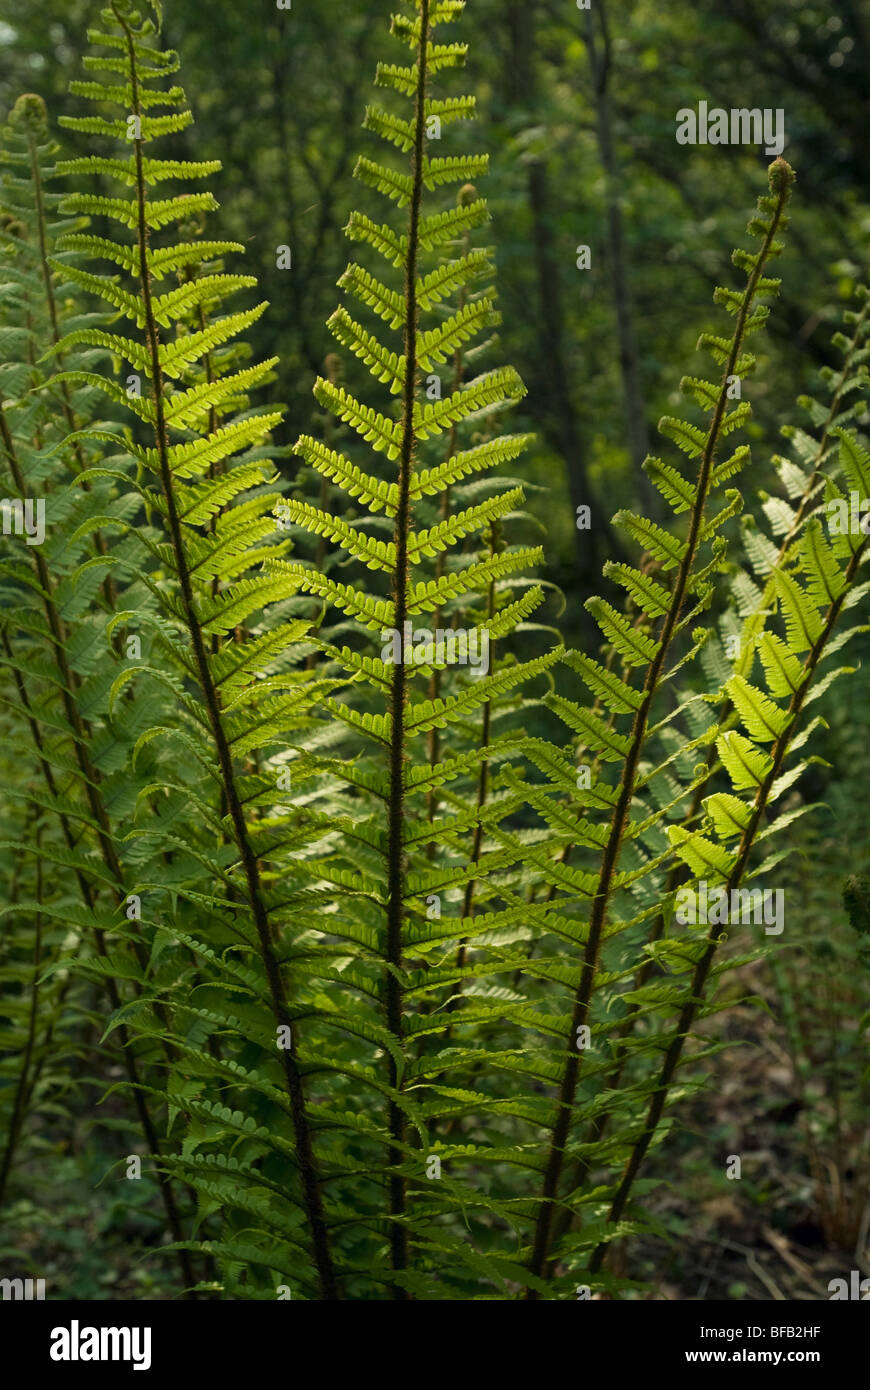 Dryopteris wallichiana, Fern, Wallich’s wood fern Stock Photo